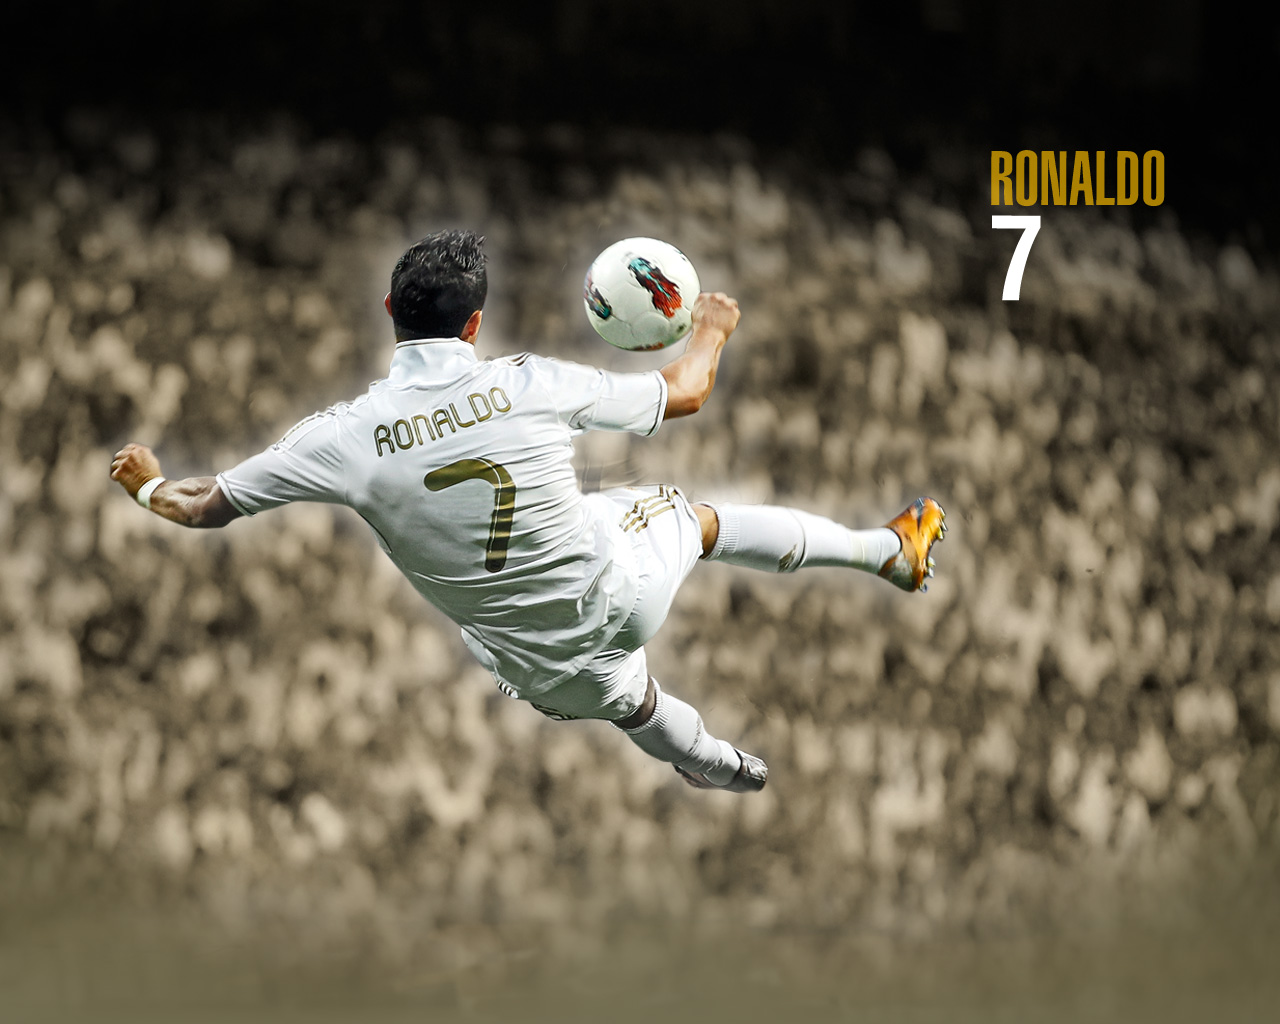 http://1.bp.blogspot.com/-VqlX7o0yjVE/UImS7yggHQI/AAAAAAAAGWc/8PaLNyLmnB4/s1600/Cristiano+Ronaldo+hd+wallpapers+2013+04.jpg